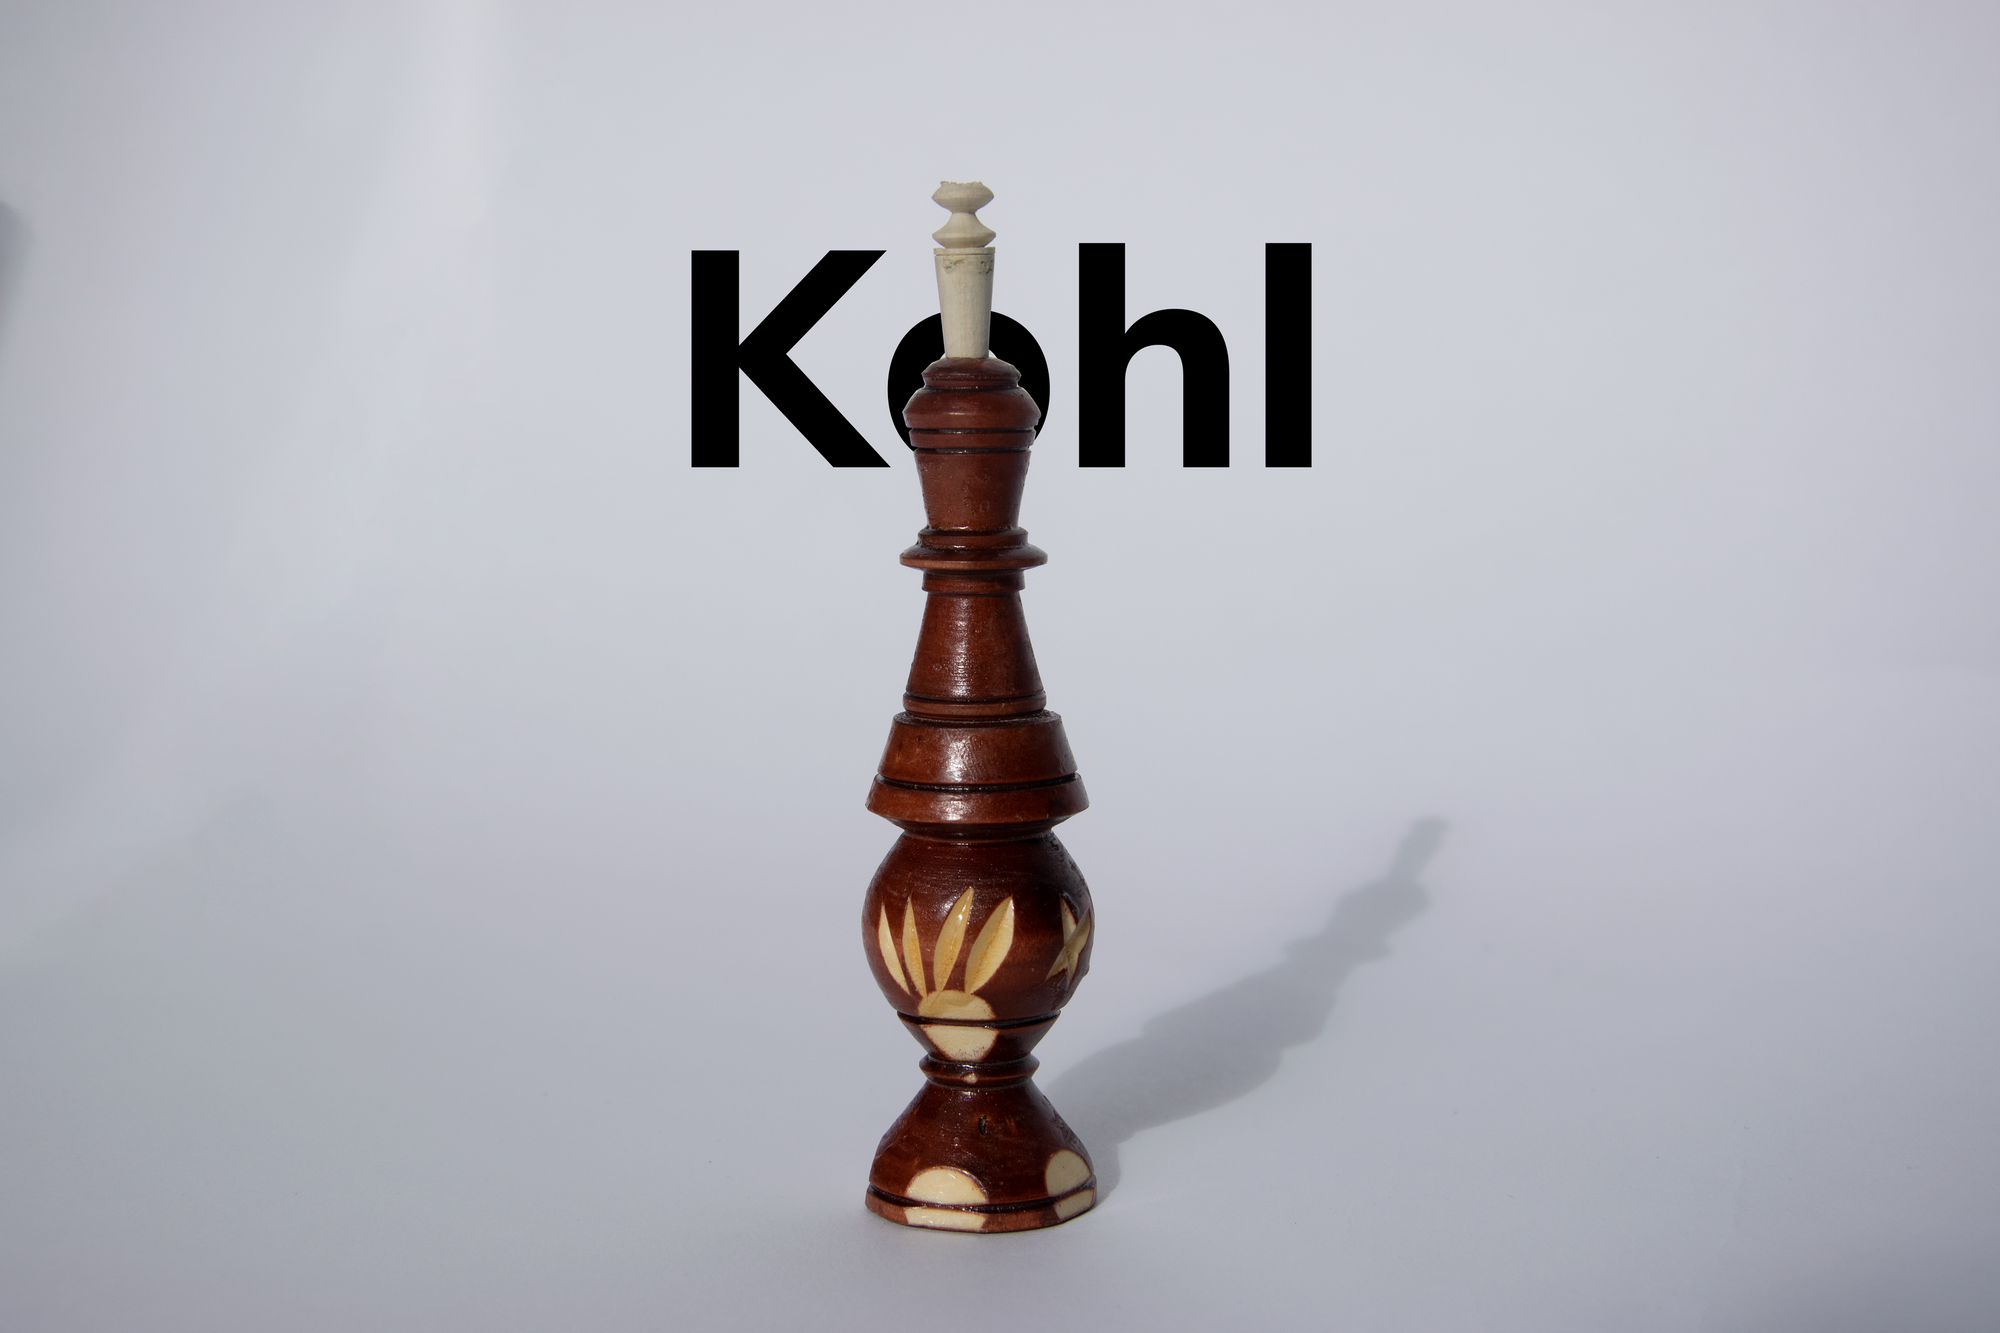 Kohl (ithmid)